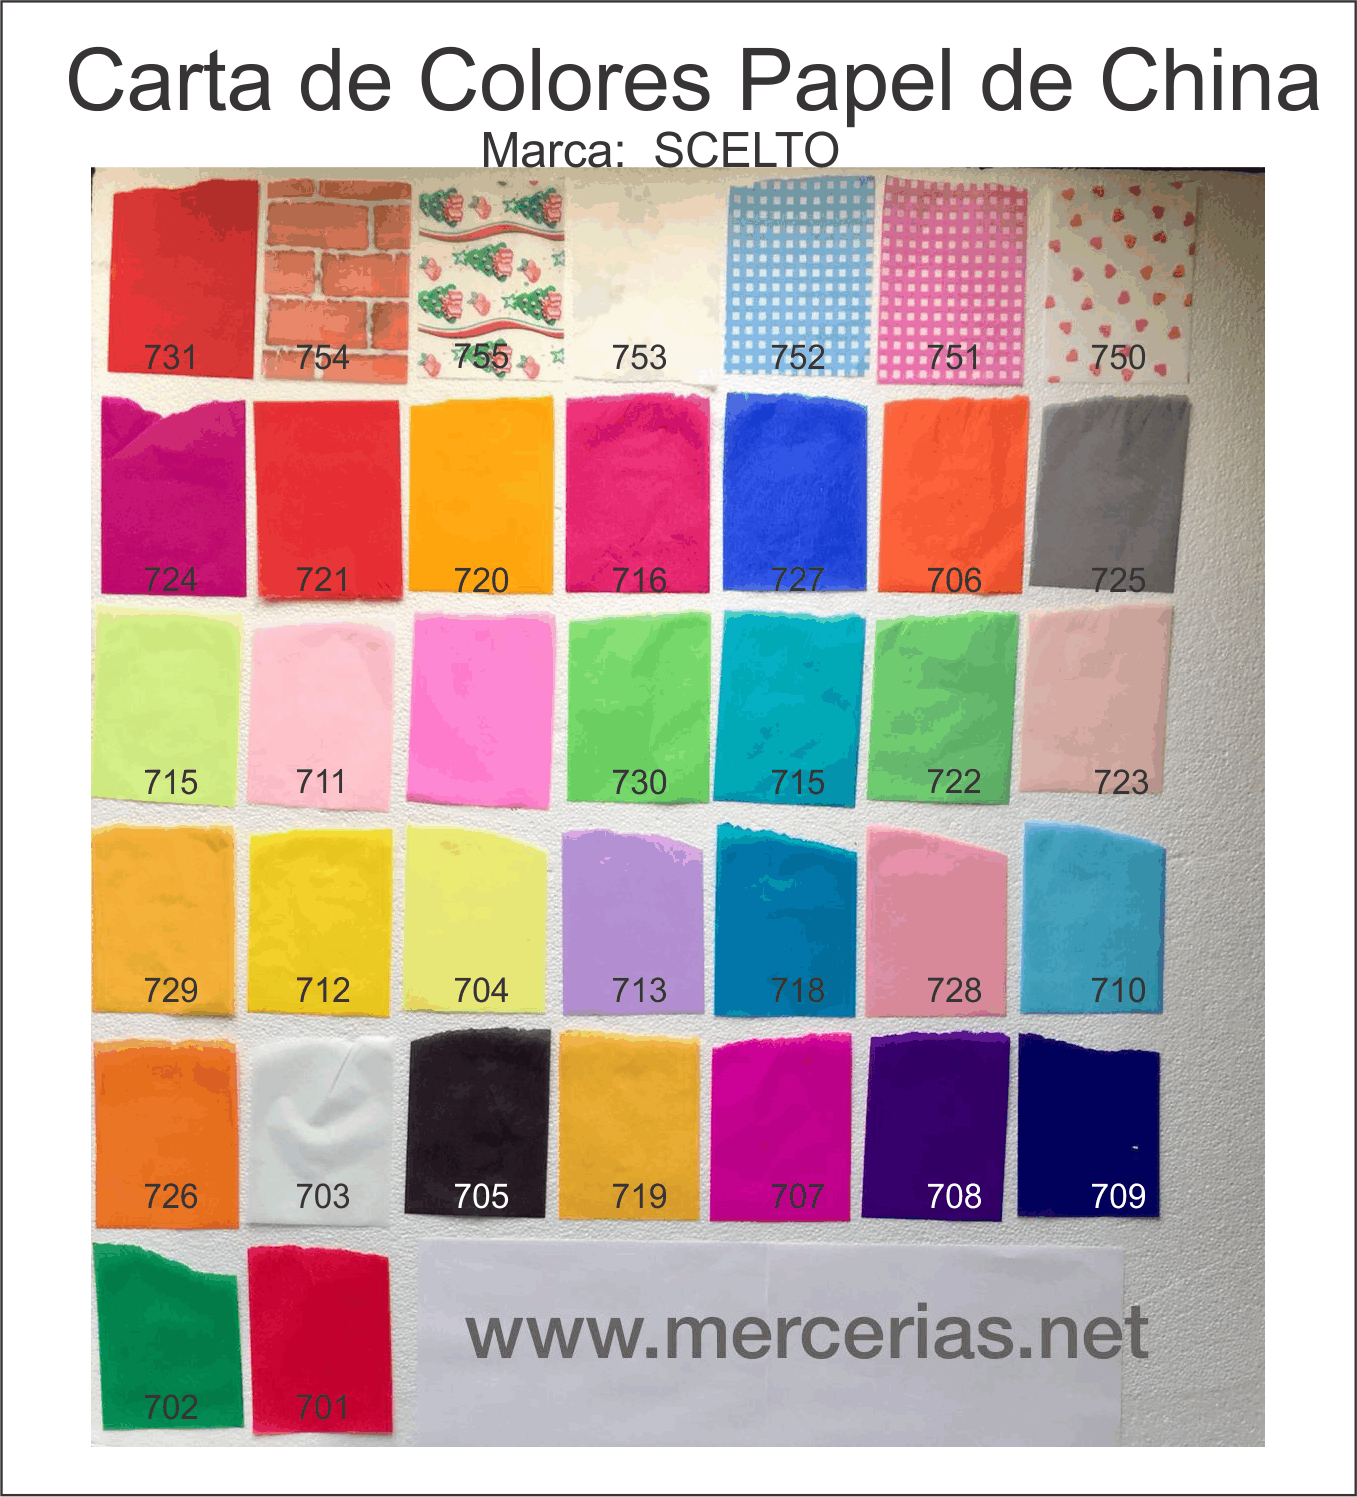 Pliego de papel china, colores varios